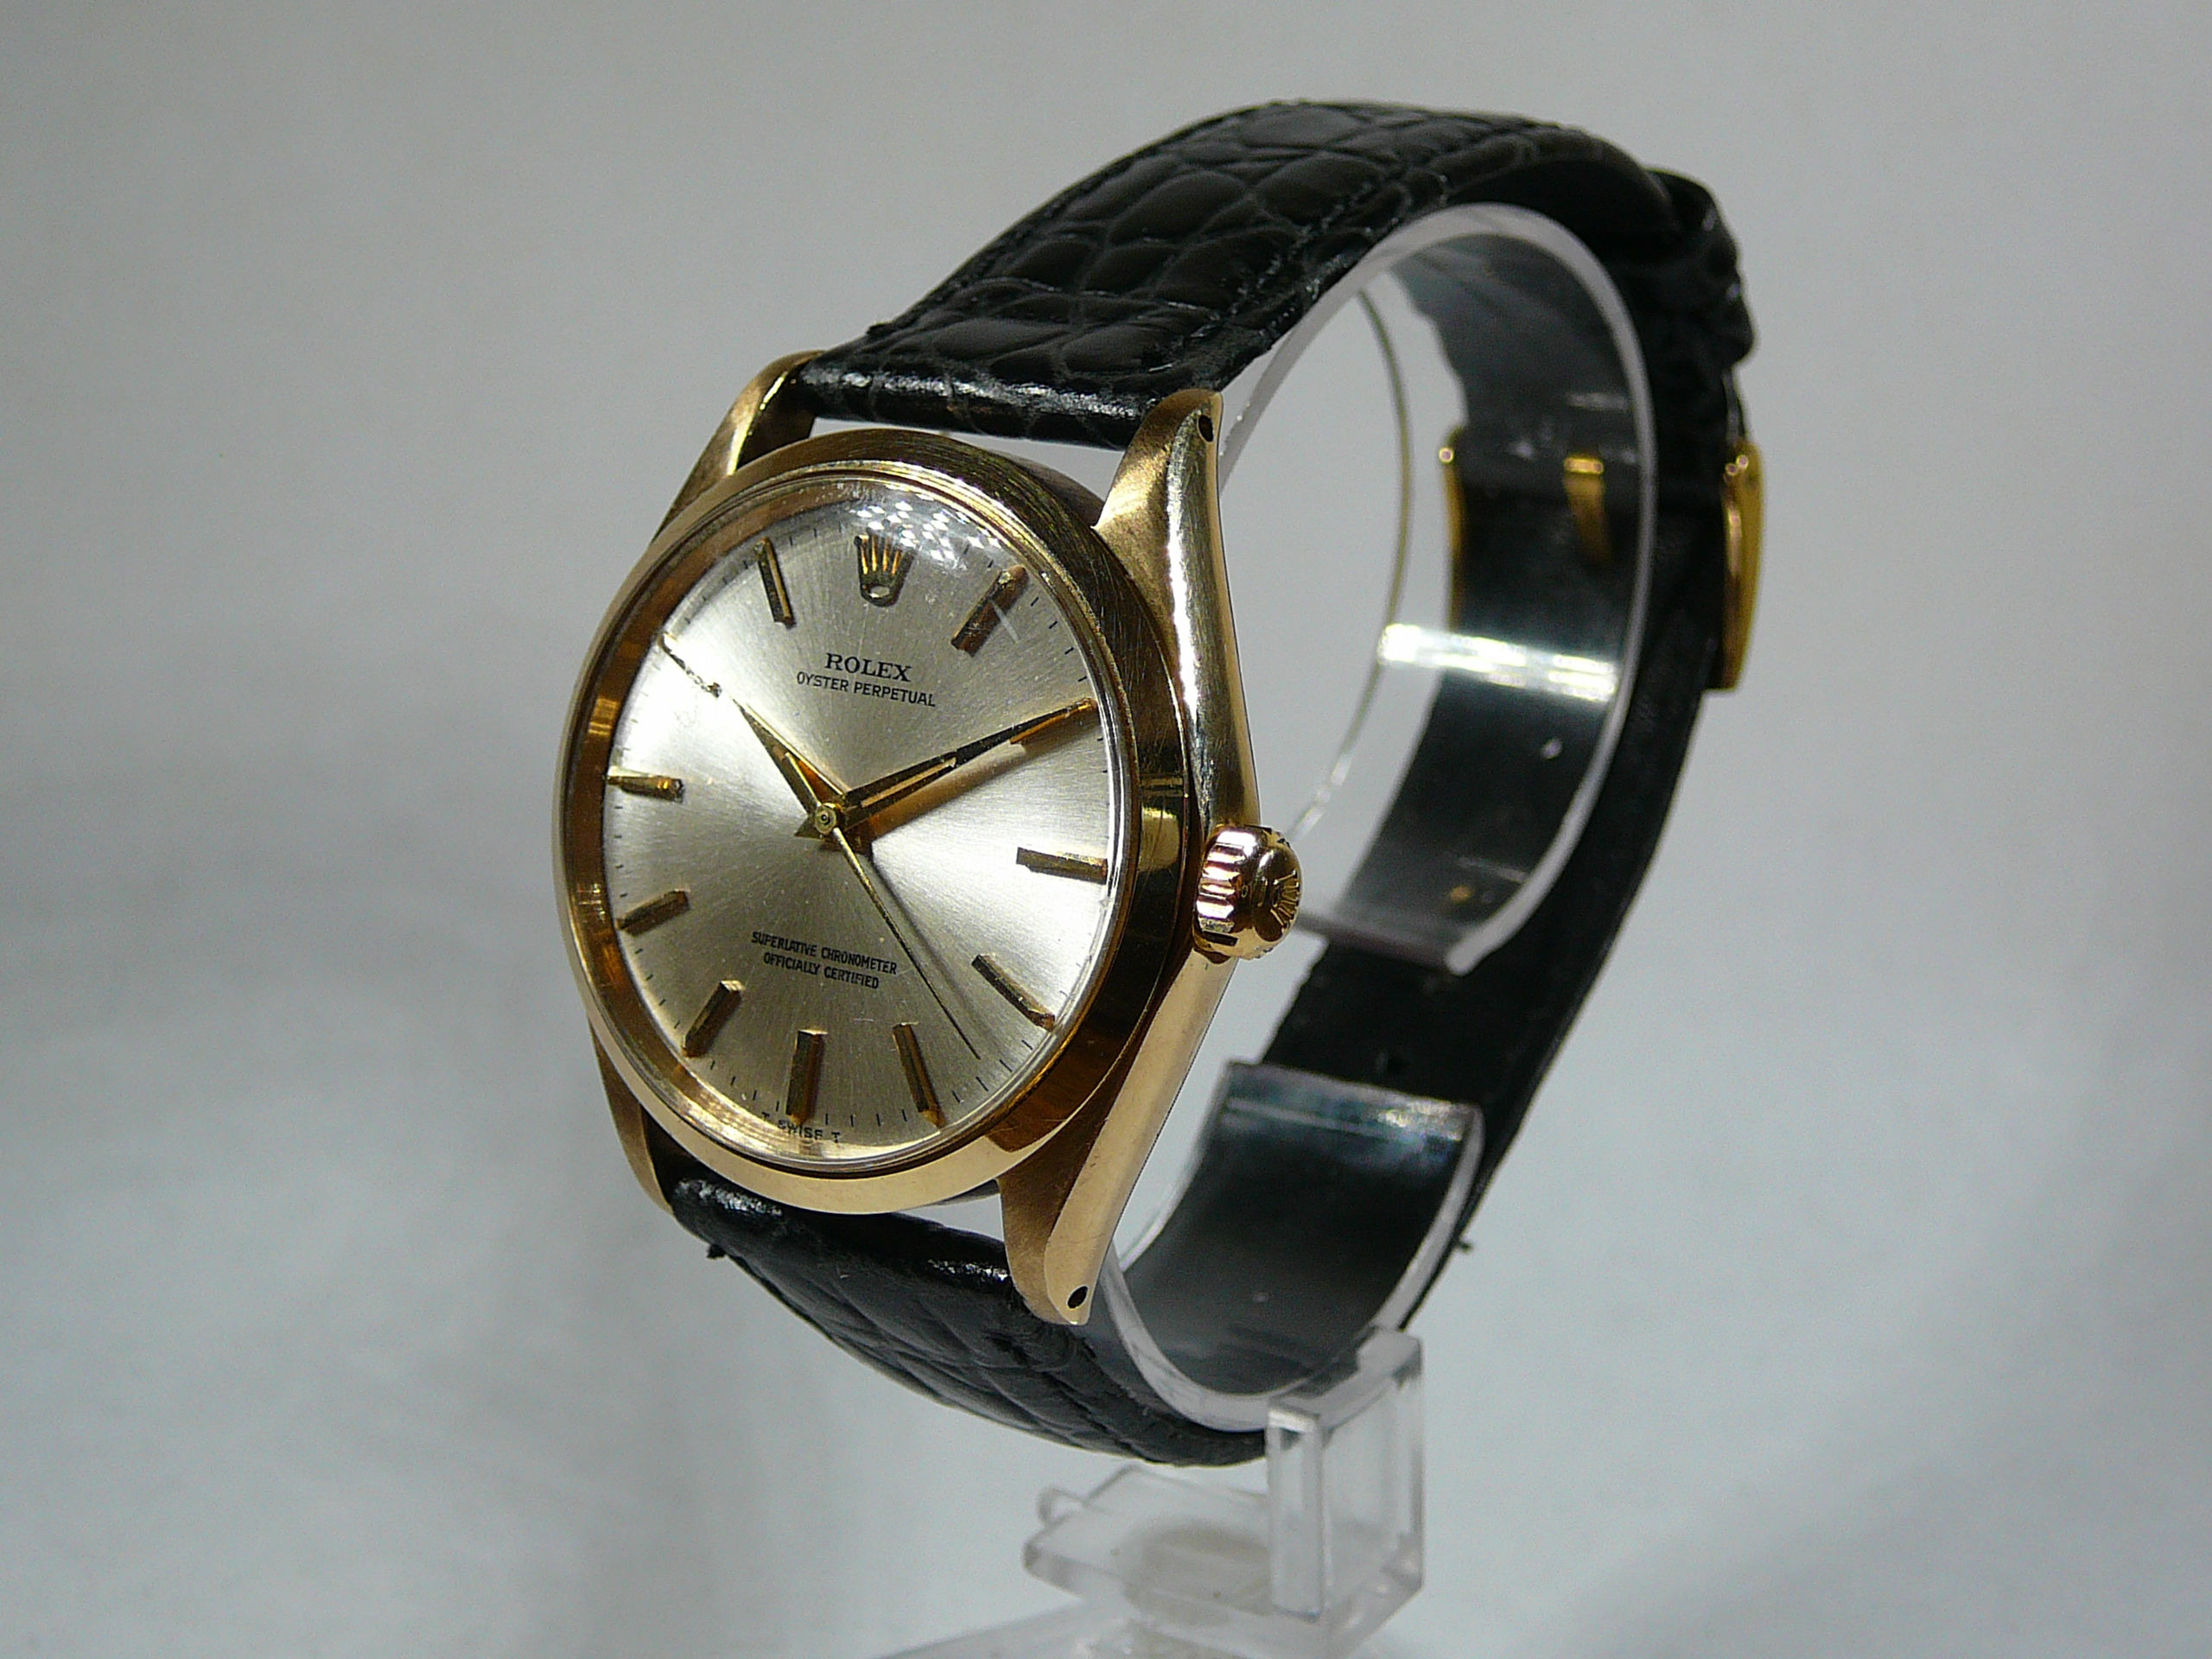 Gents Rolex Gold Wrist Watch